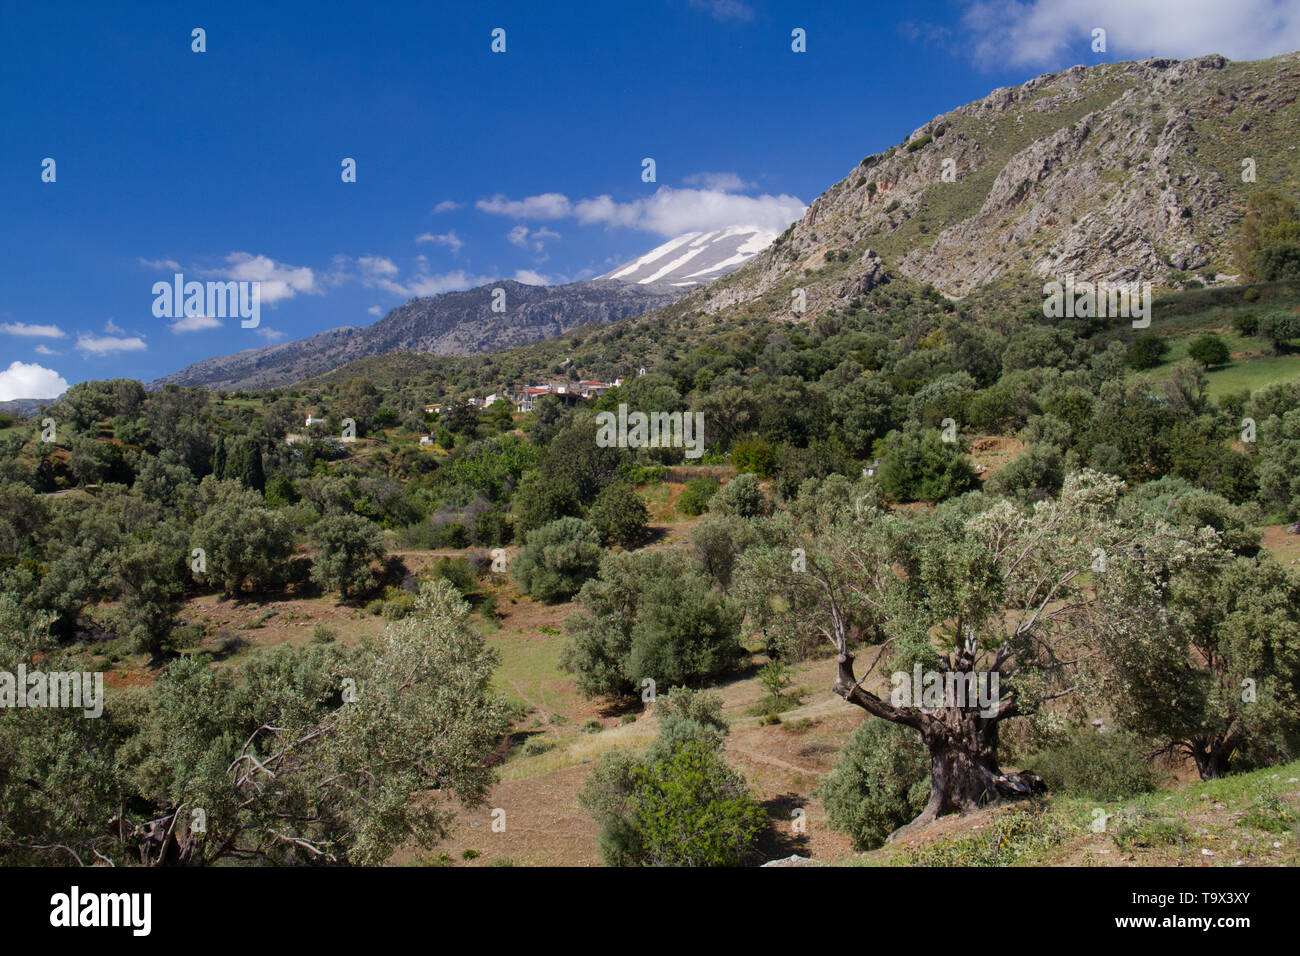 Paesaggio di Creta, Grecia: vista su un frutteto di oliva, nella distanza una coperta di neve montagna e un villaggio con case bianche Foto Stock